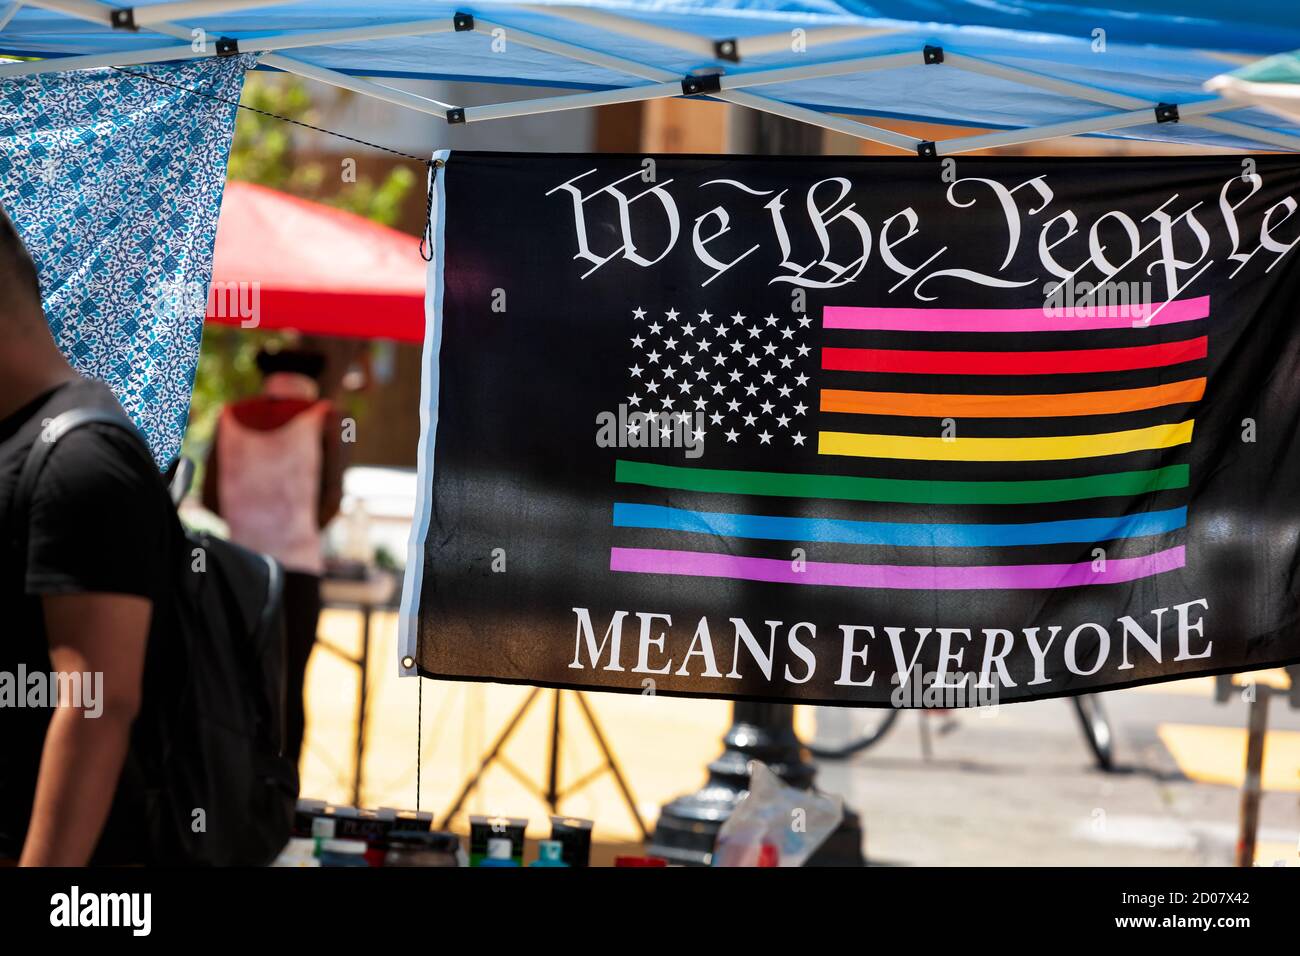 Un drapeau accroché à une manifestation artistique dit : « nous le peuple signifie tout le monde » et dépeint un drapeau américain aux couleurs de l'arc-en-ciel, Washington, DC, États-Unis Banque D'Images